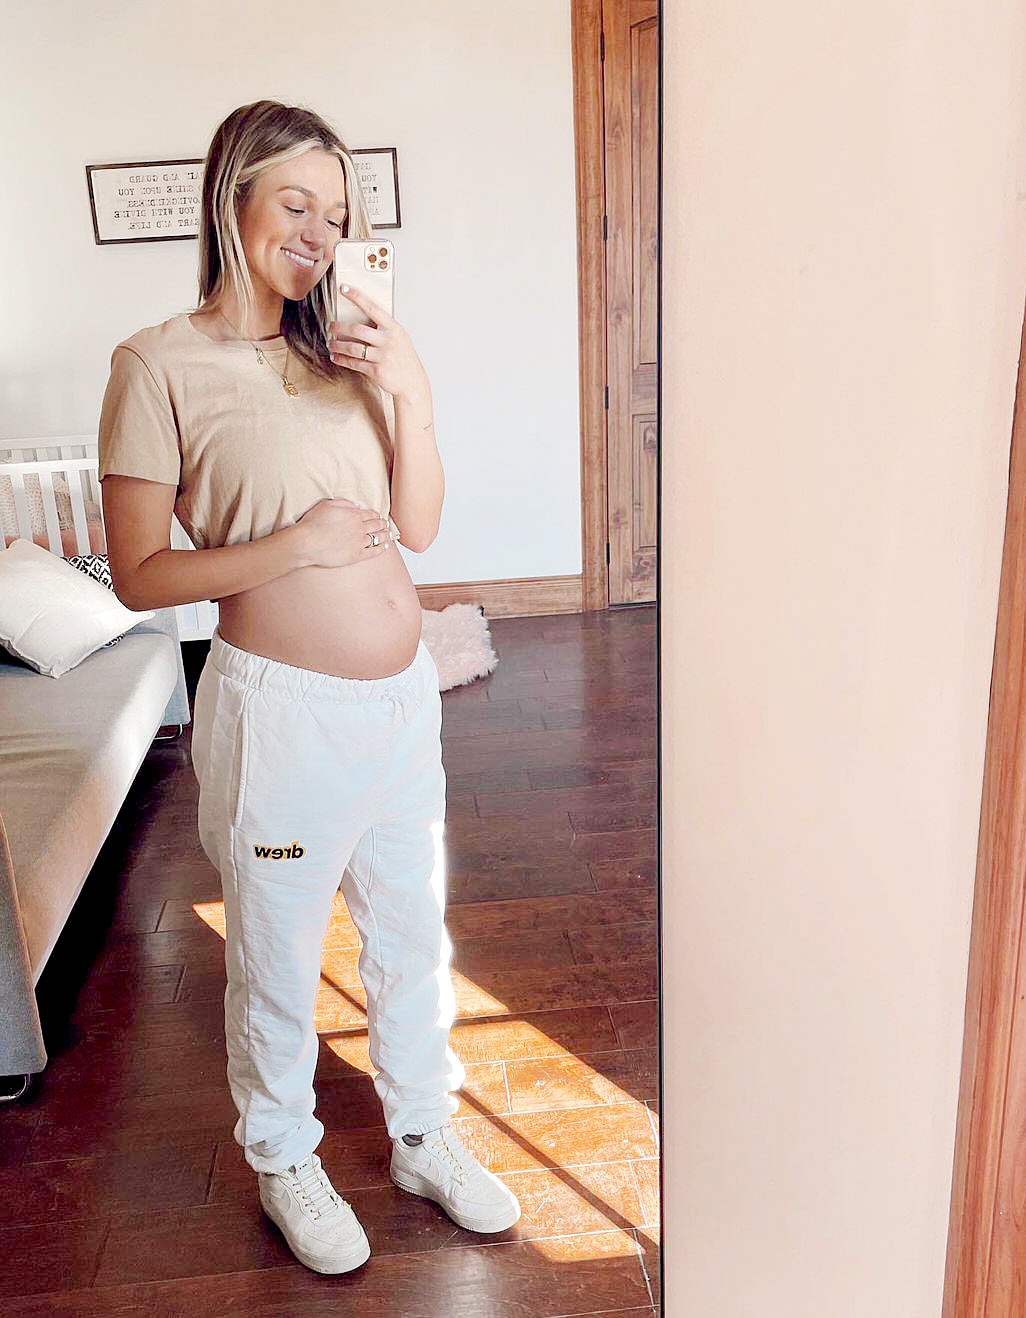 Pregnant Sadie Robertsons Bare Baby Bump at 25 Weeks Pics pic